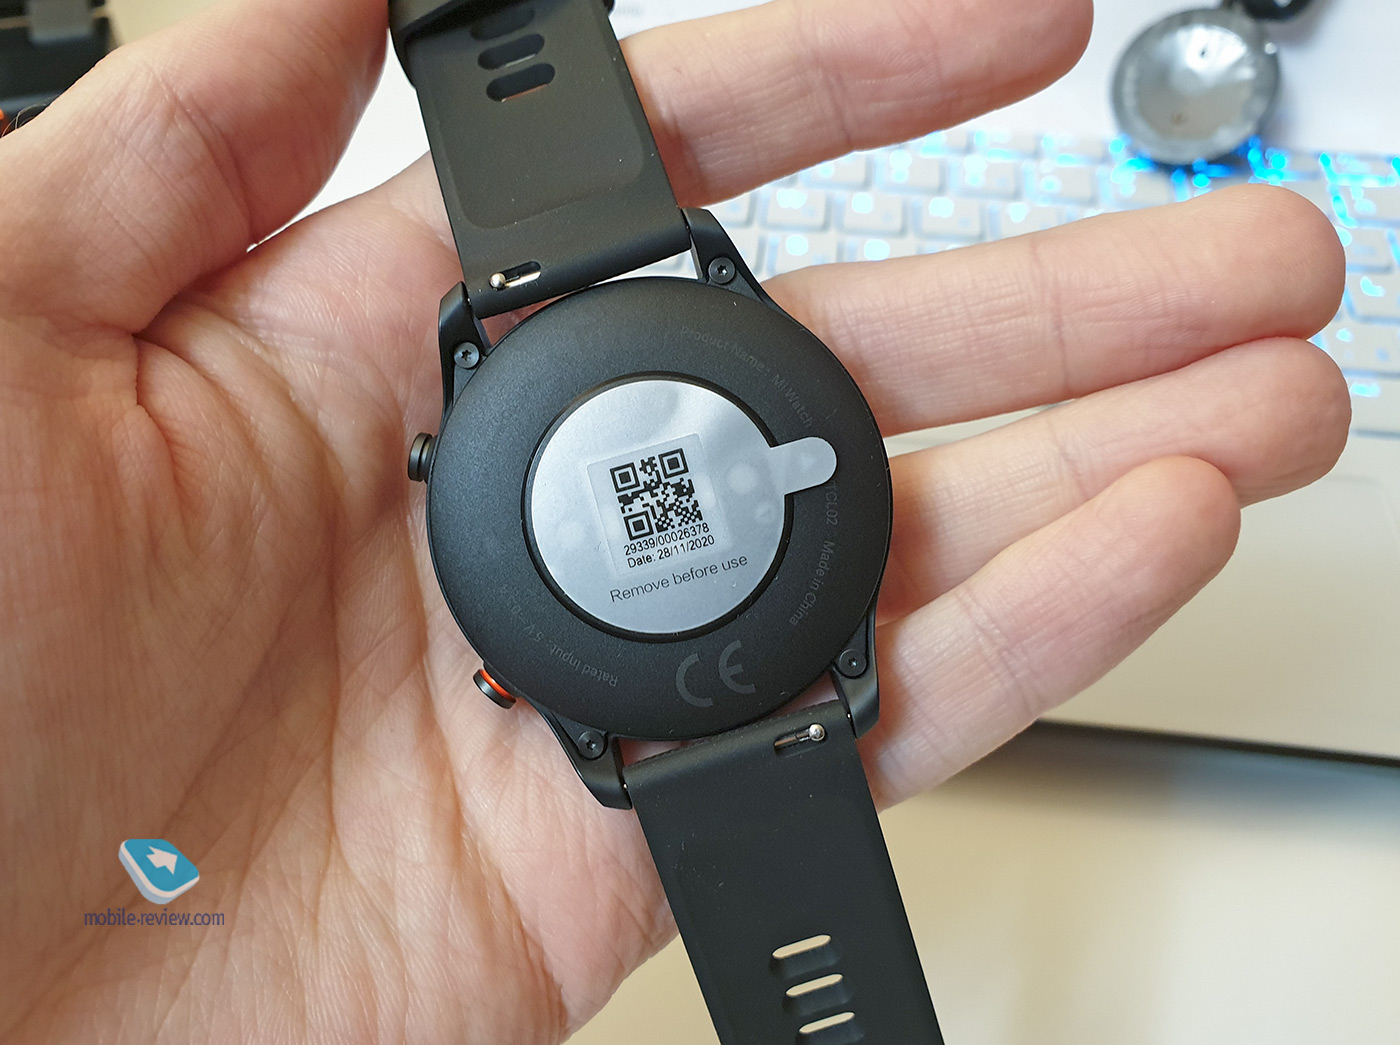  Xiaomi Mi Watch:     